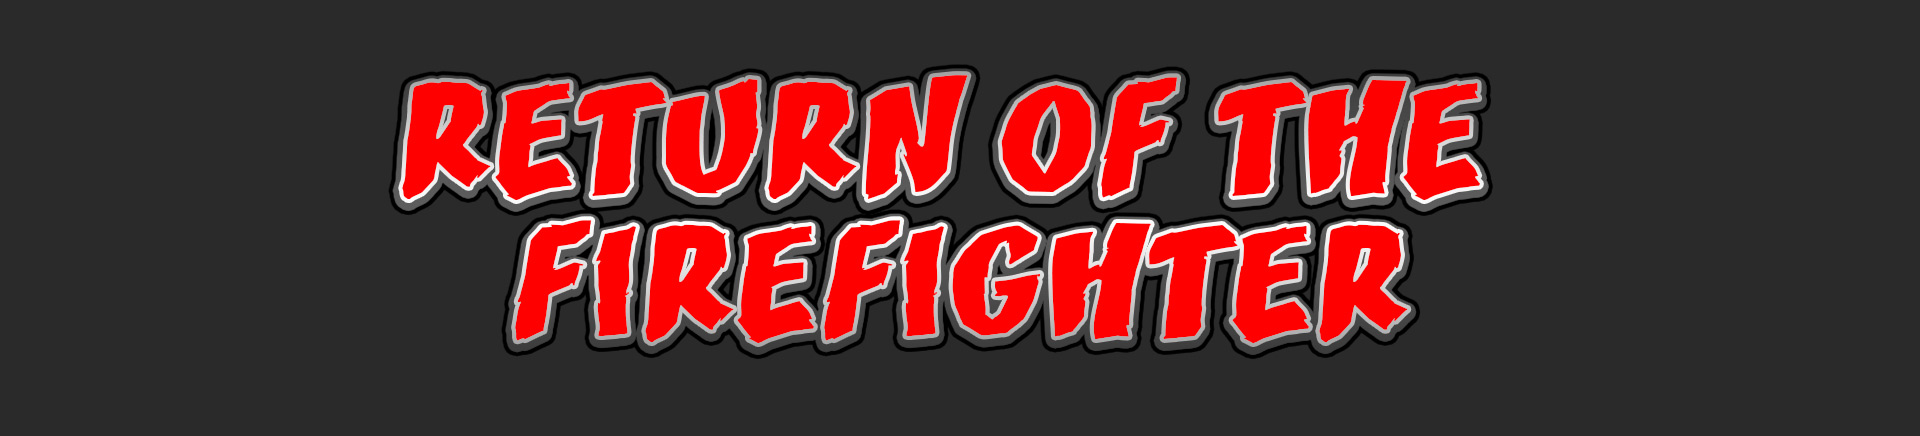 Return of the Firefighter